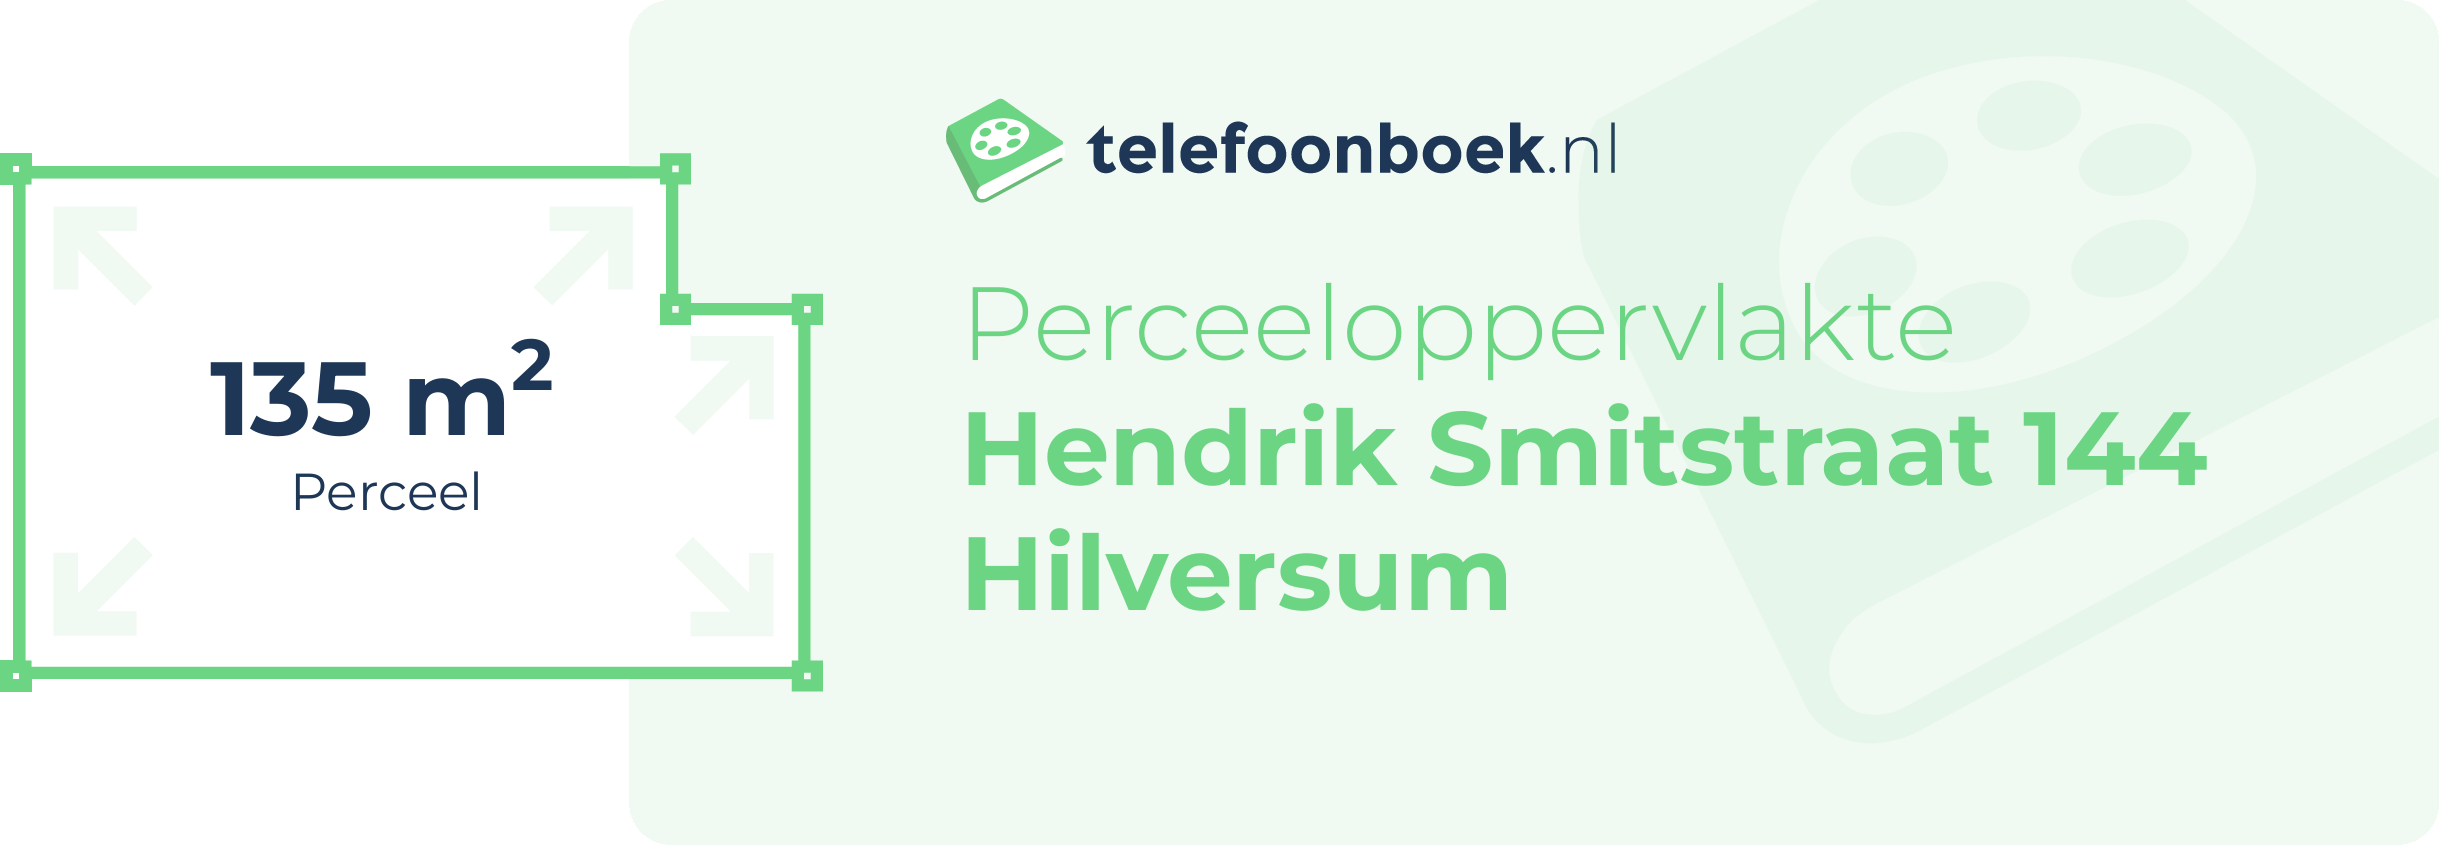 Perceeloppervlakte Hendrik Smitstraat 144 Hilversum